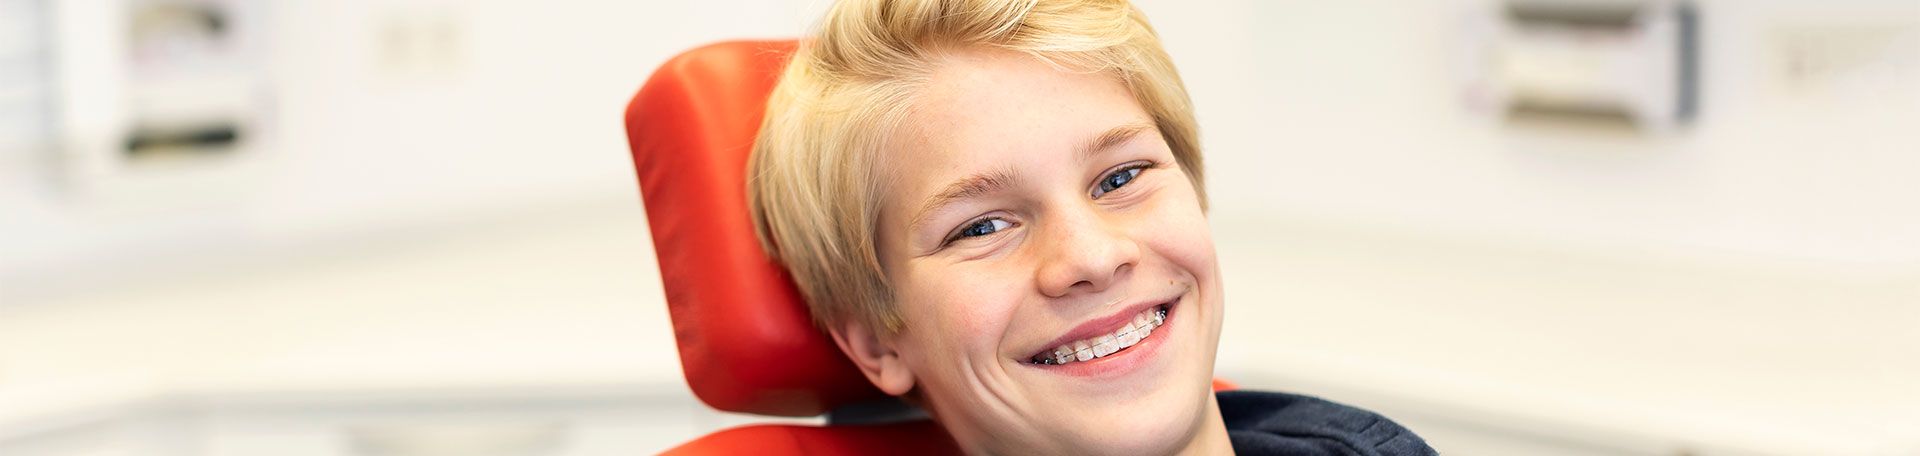 Illustrationsfoto Kieferorthopädie: Junge zeigt grinsend seine feste Zahnspange